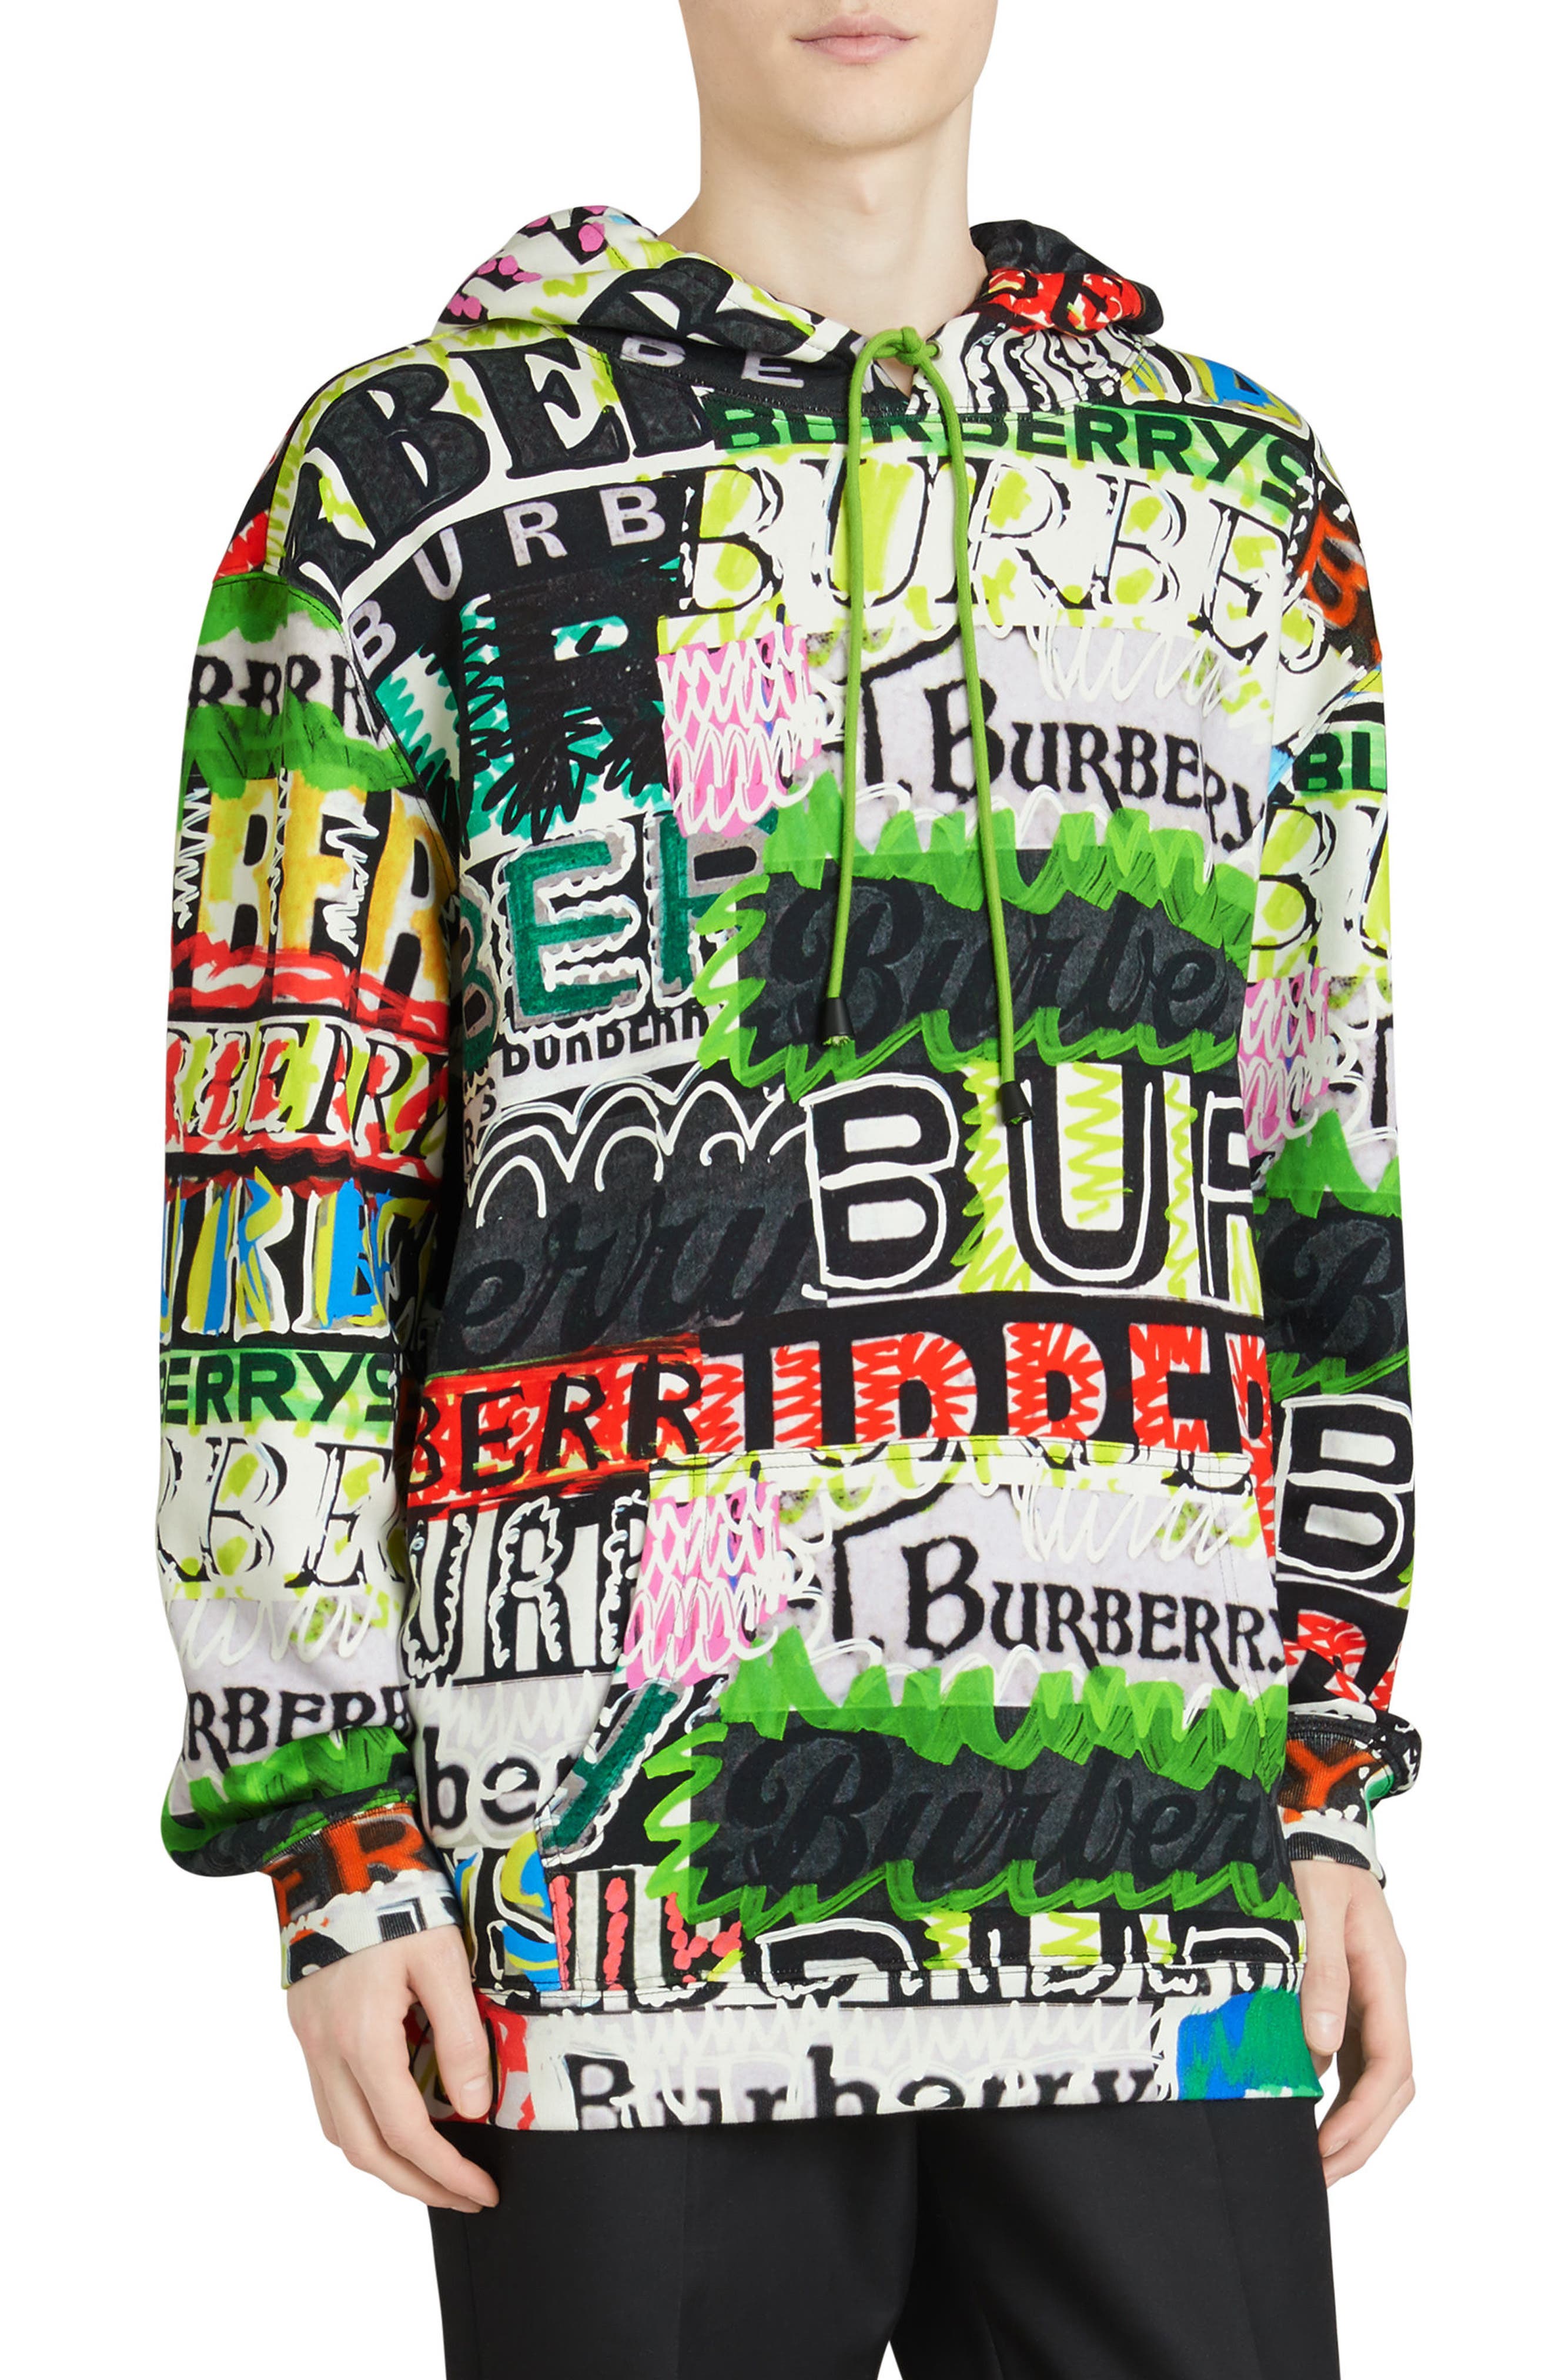 burberry hoodie kids online